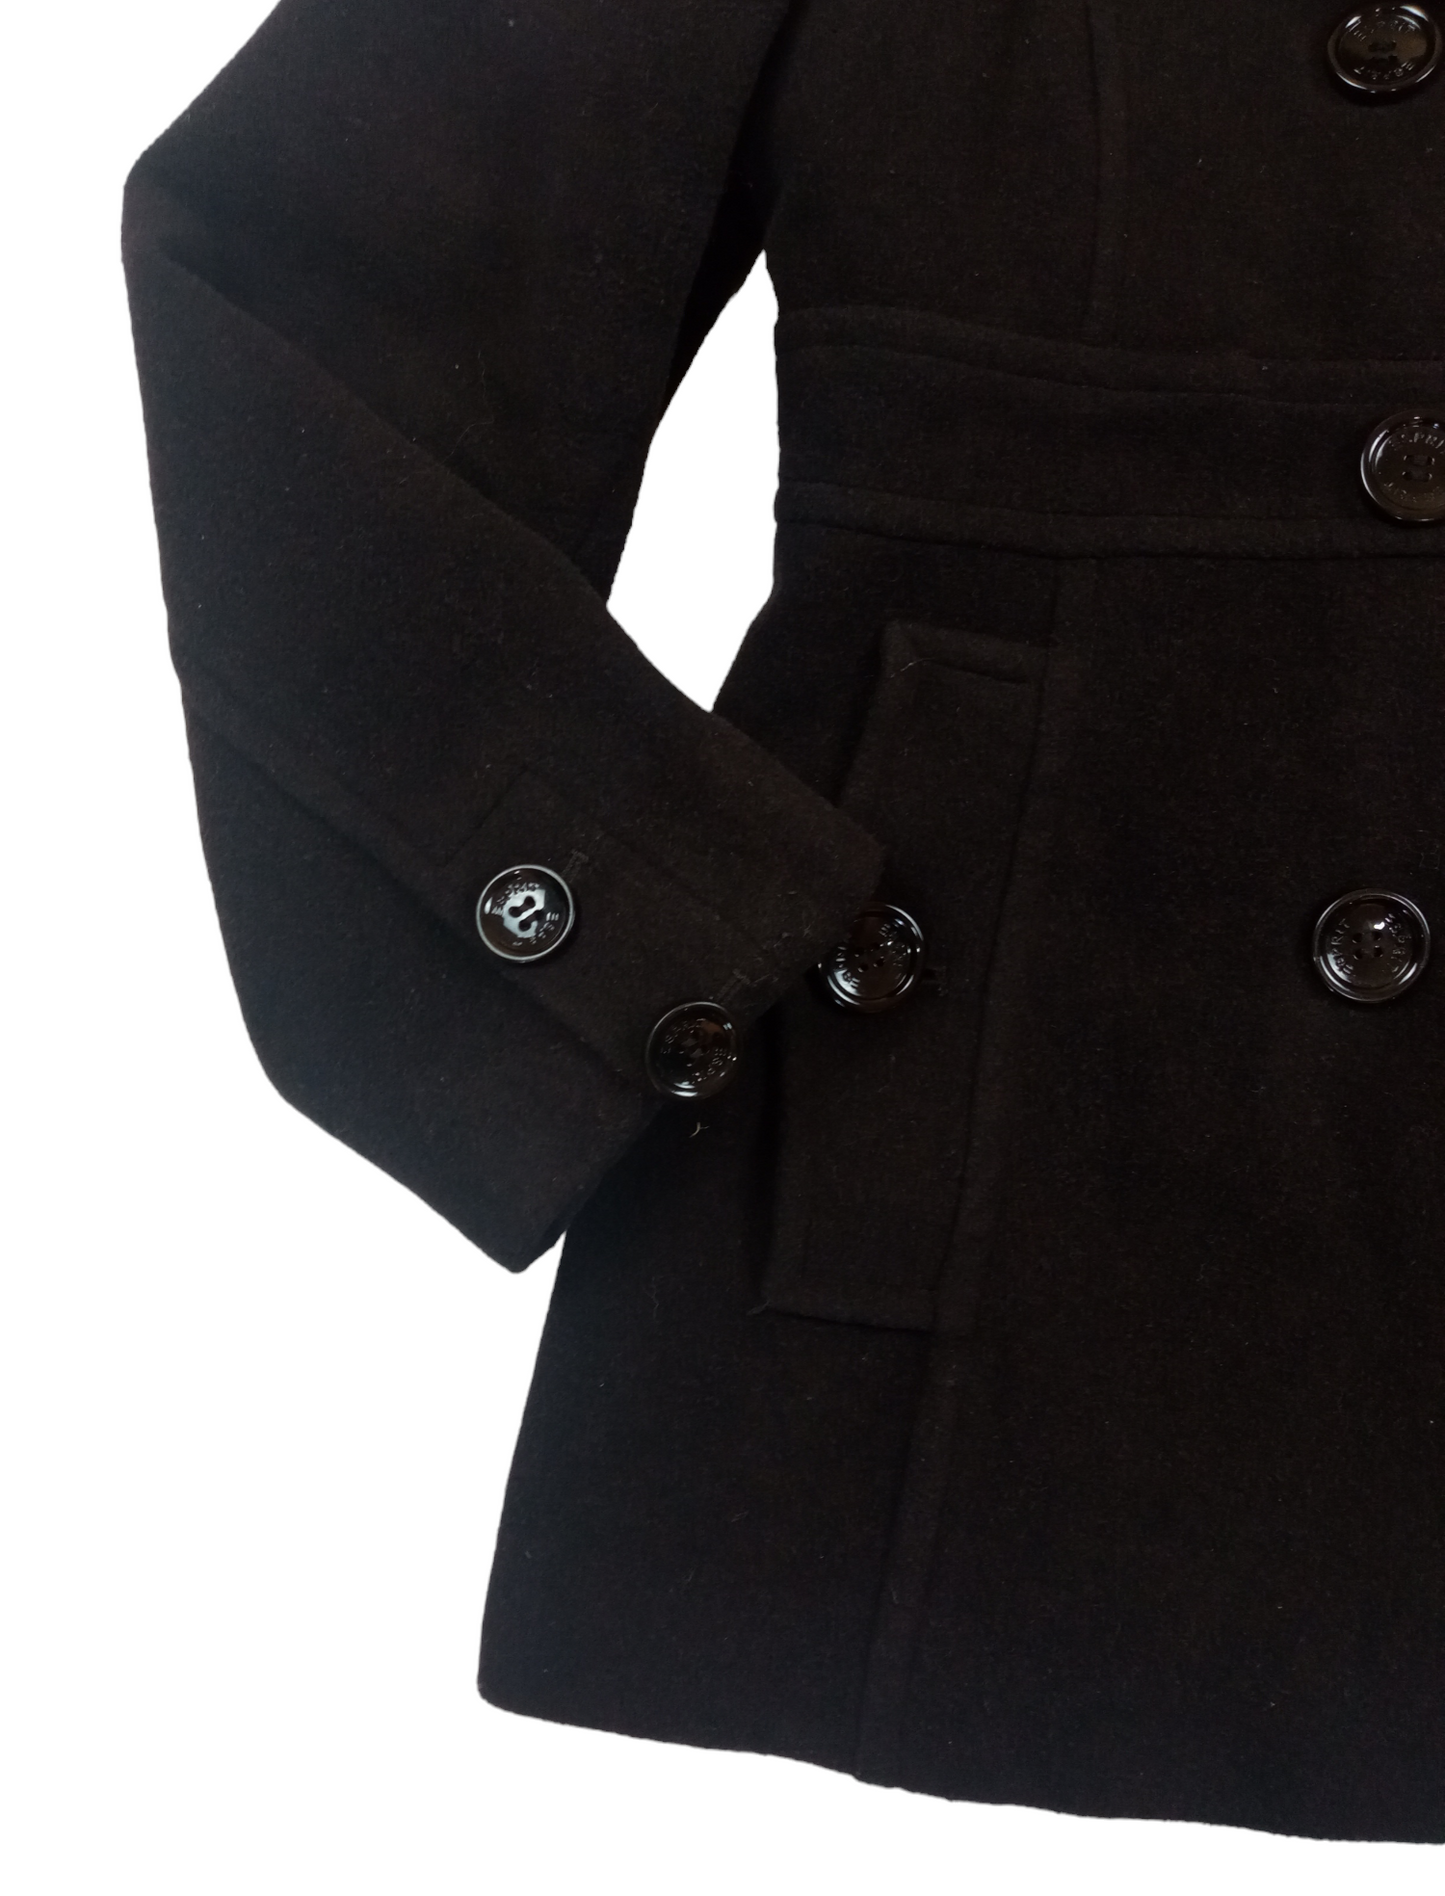 Abrigo negro/ talla L